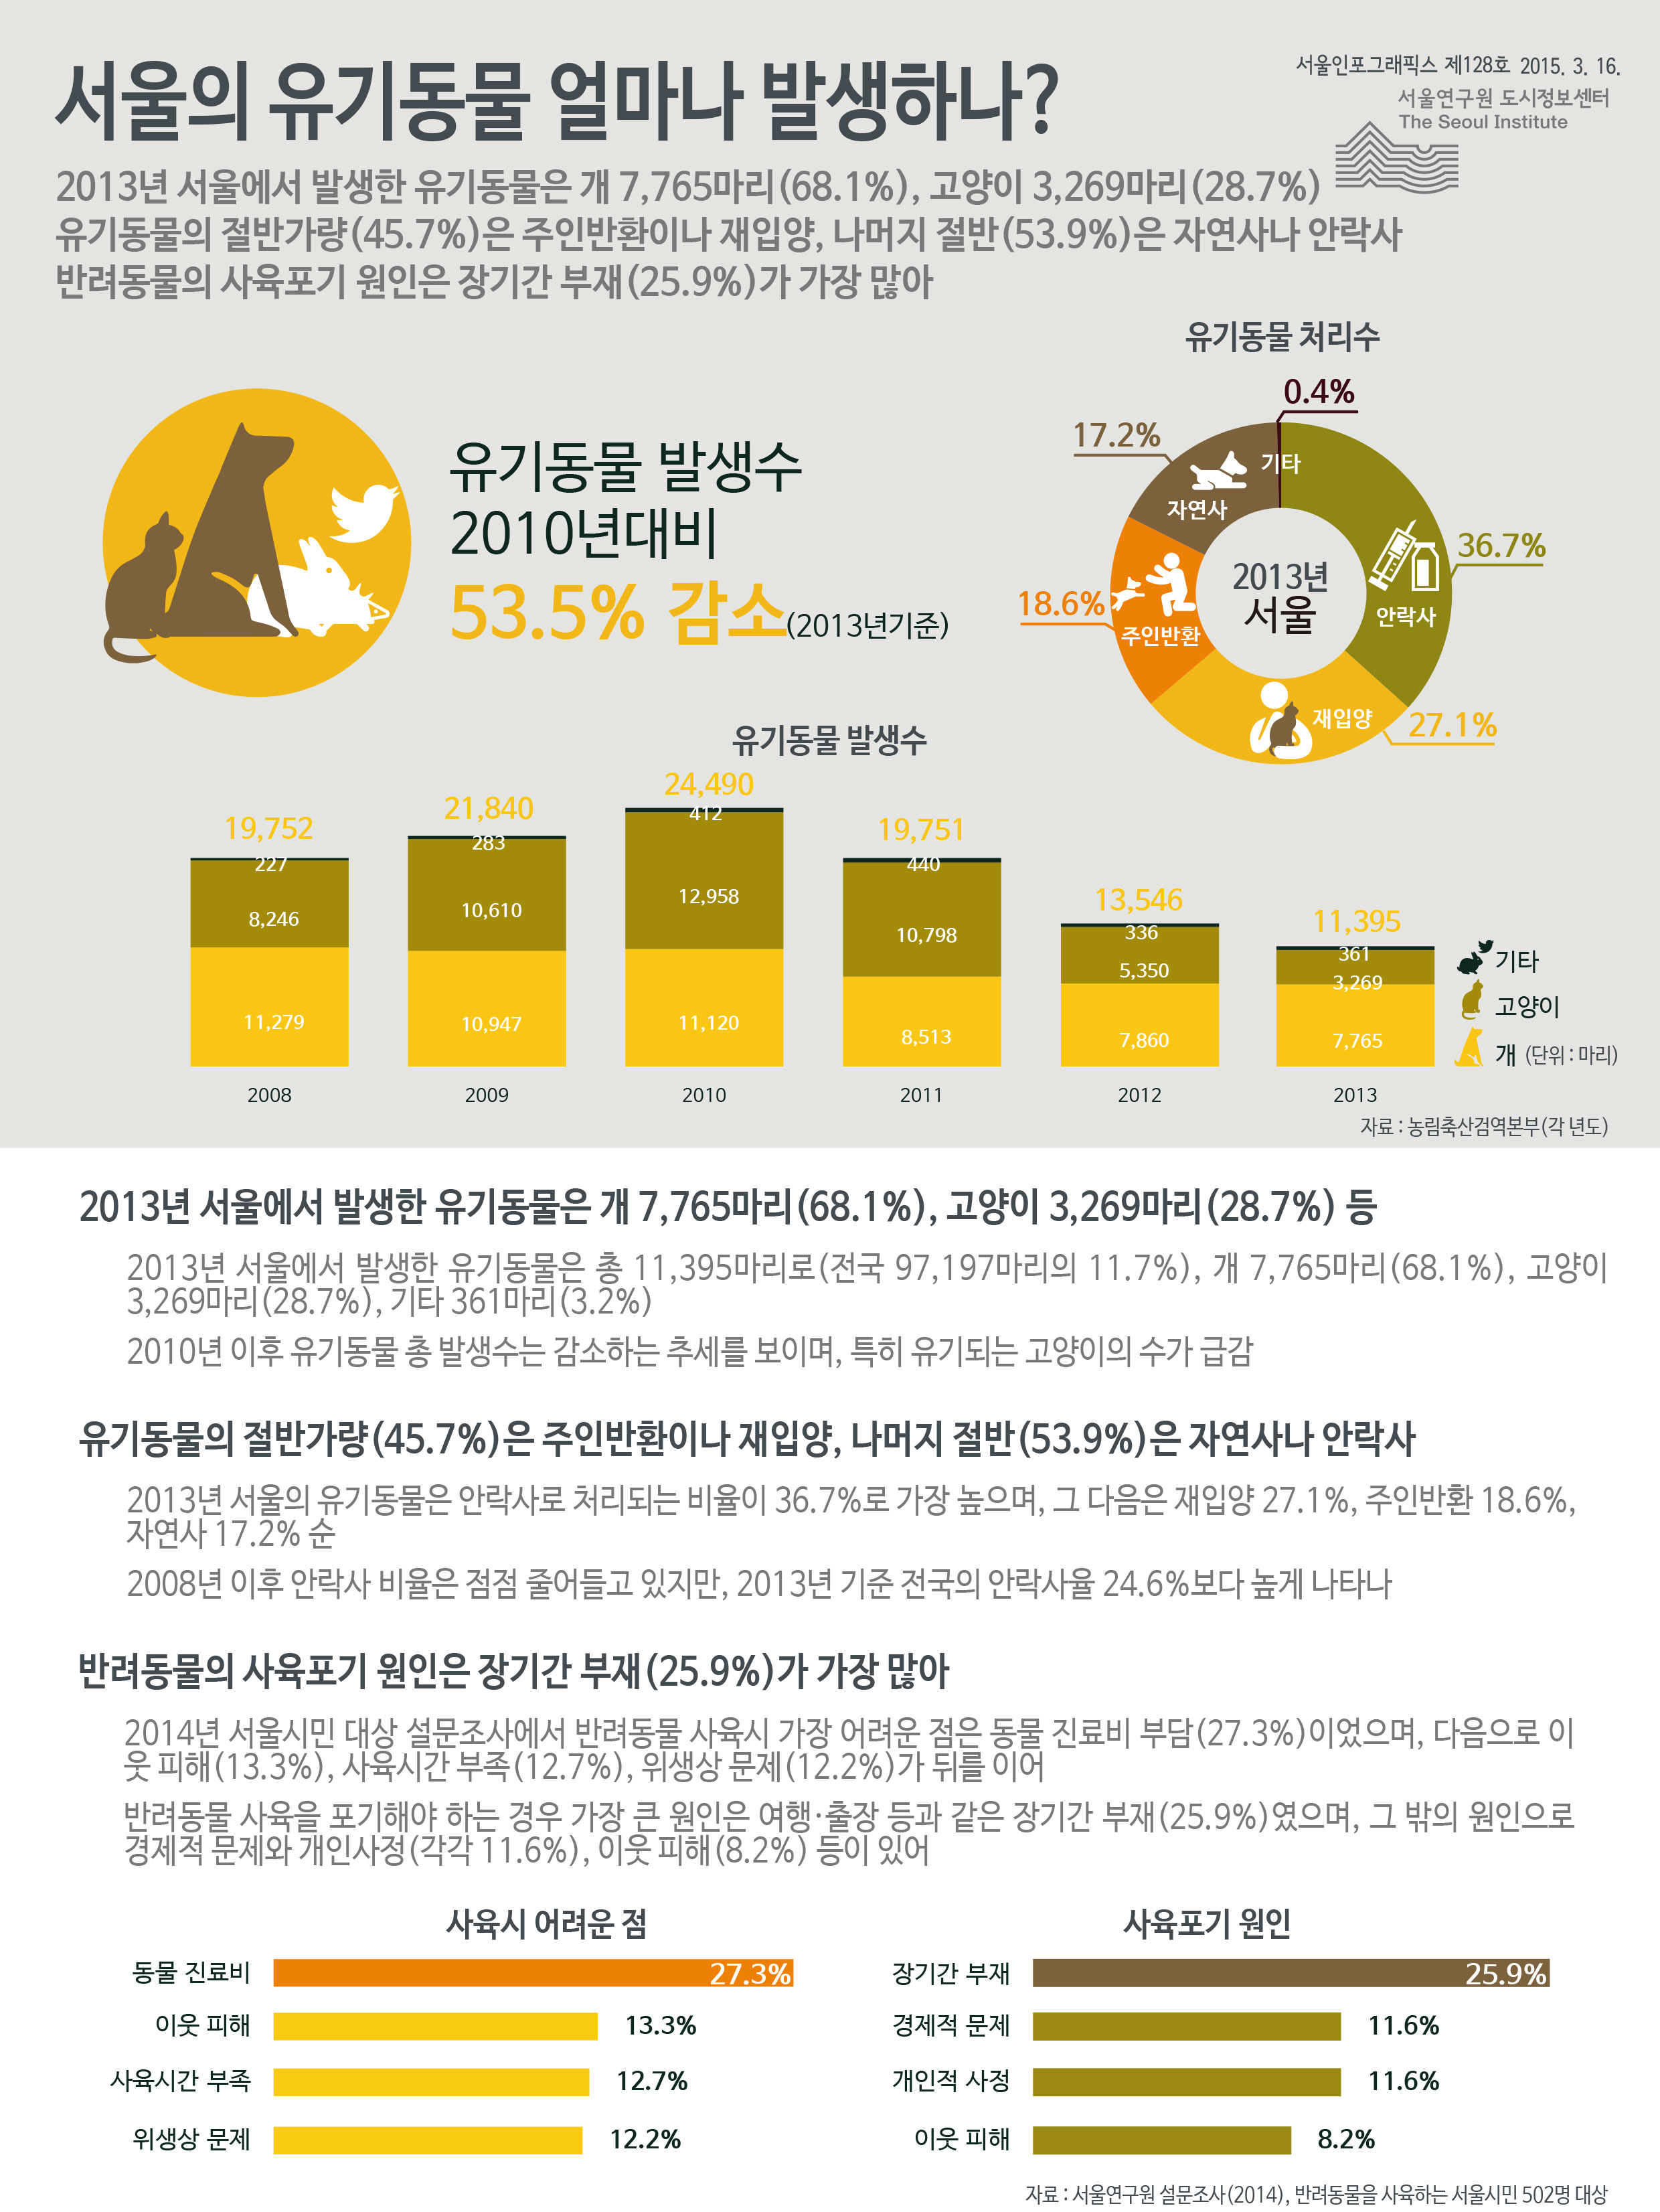 서울의 유기동물 얼마나 발생하나? 서울인포그래픽스 제128호 2015년 3월 16일 2013년 서울에서 발생한 유기동물은 개 7,765마리(68.1%), 고양이 3,269마리(28.7%) 등 유기동물의 절반가량(45.7%)은 주인반환이나 재입양, 나머지 절반(53.9%)은 자연사나 안락사. 반려동물의 사육포기 원인은 장기간 부재가 25.9%로 가장 많음으로 정리될 수 있습니다. 인포그래픽으로 제공되는 그래픽은 하단에 표로 자세히 제공됩니다.